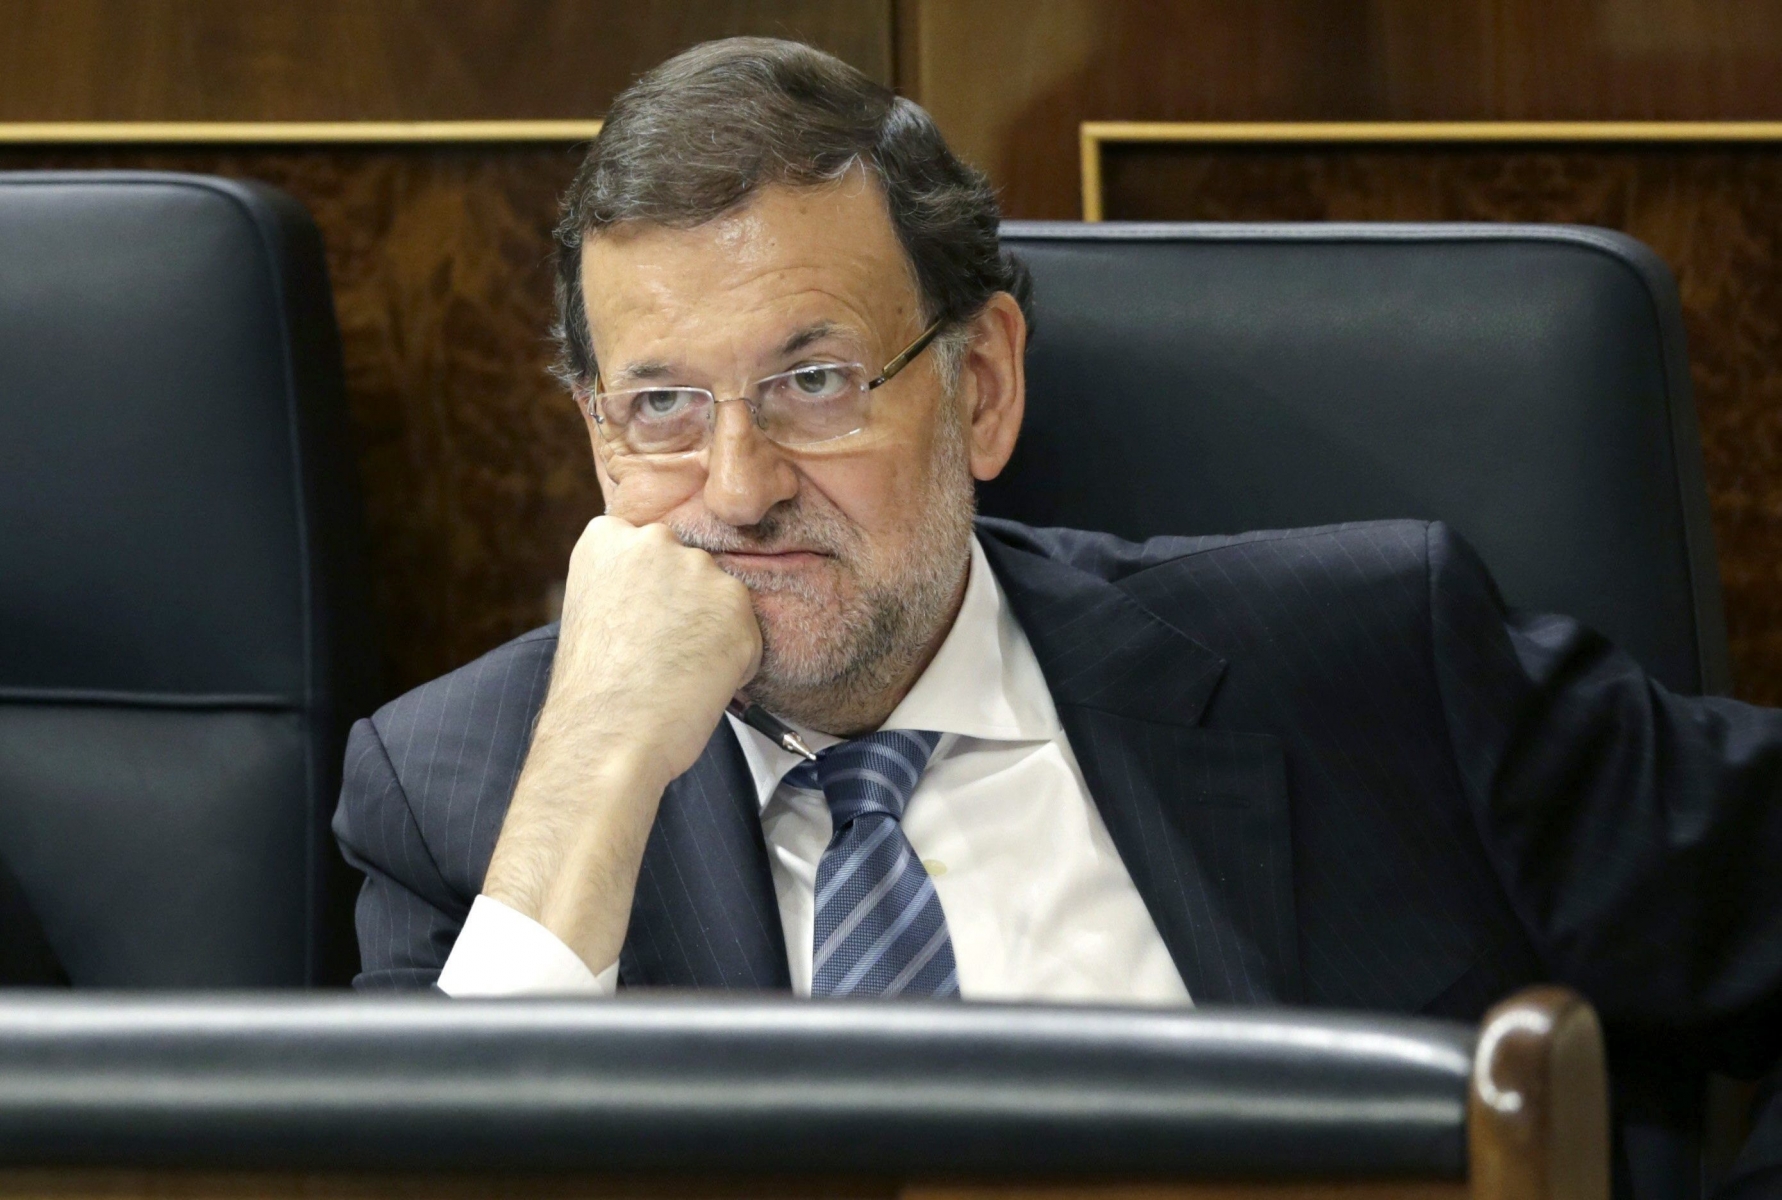 Le chef du gouvernement espagnol Mariano Rajoy a rétorqué: "Ce n'est pas sérieux, faites ce que vous voulez mais ce n'est pas sérieux". (archive)

   KEYSTONE